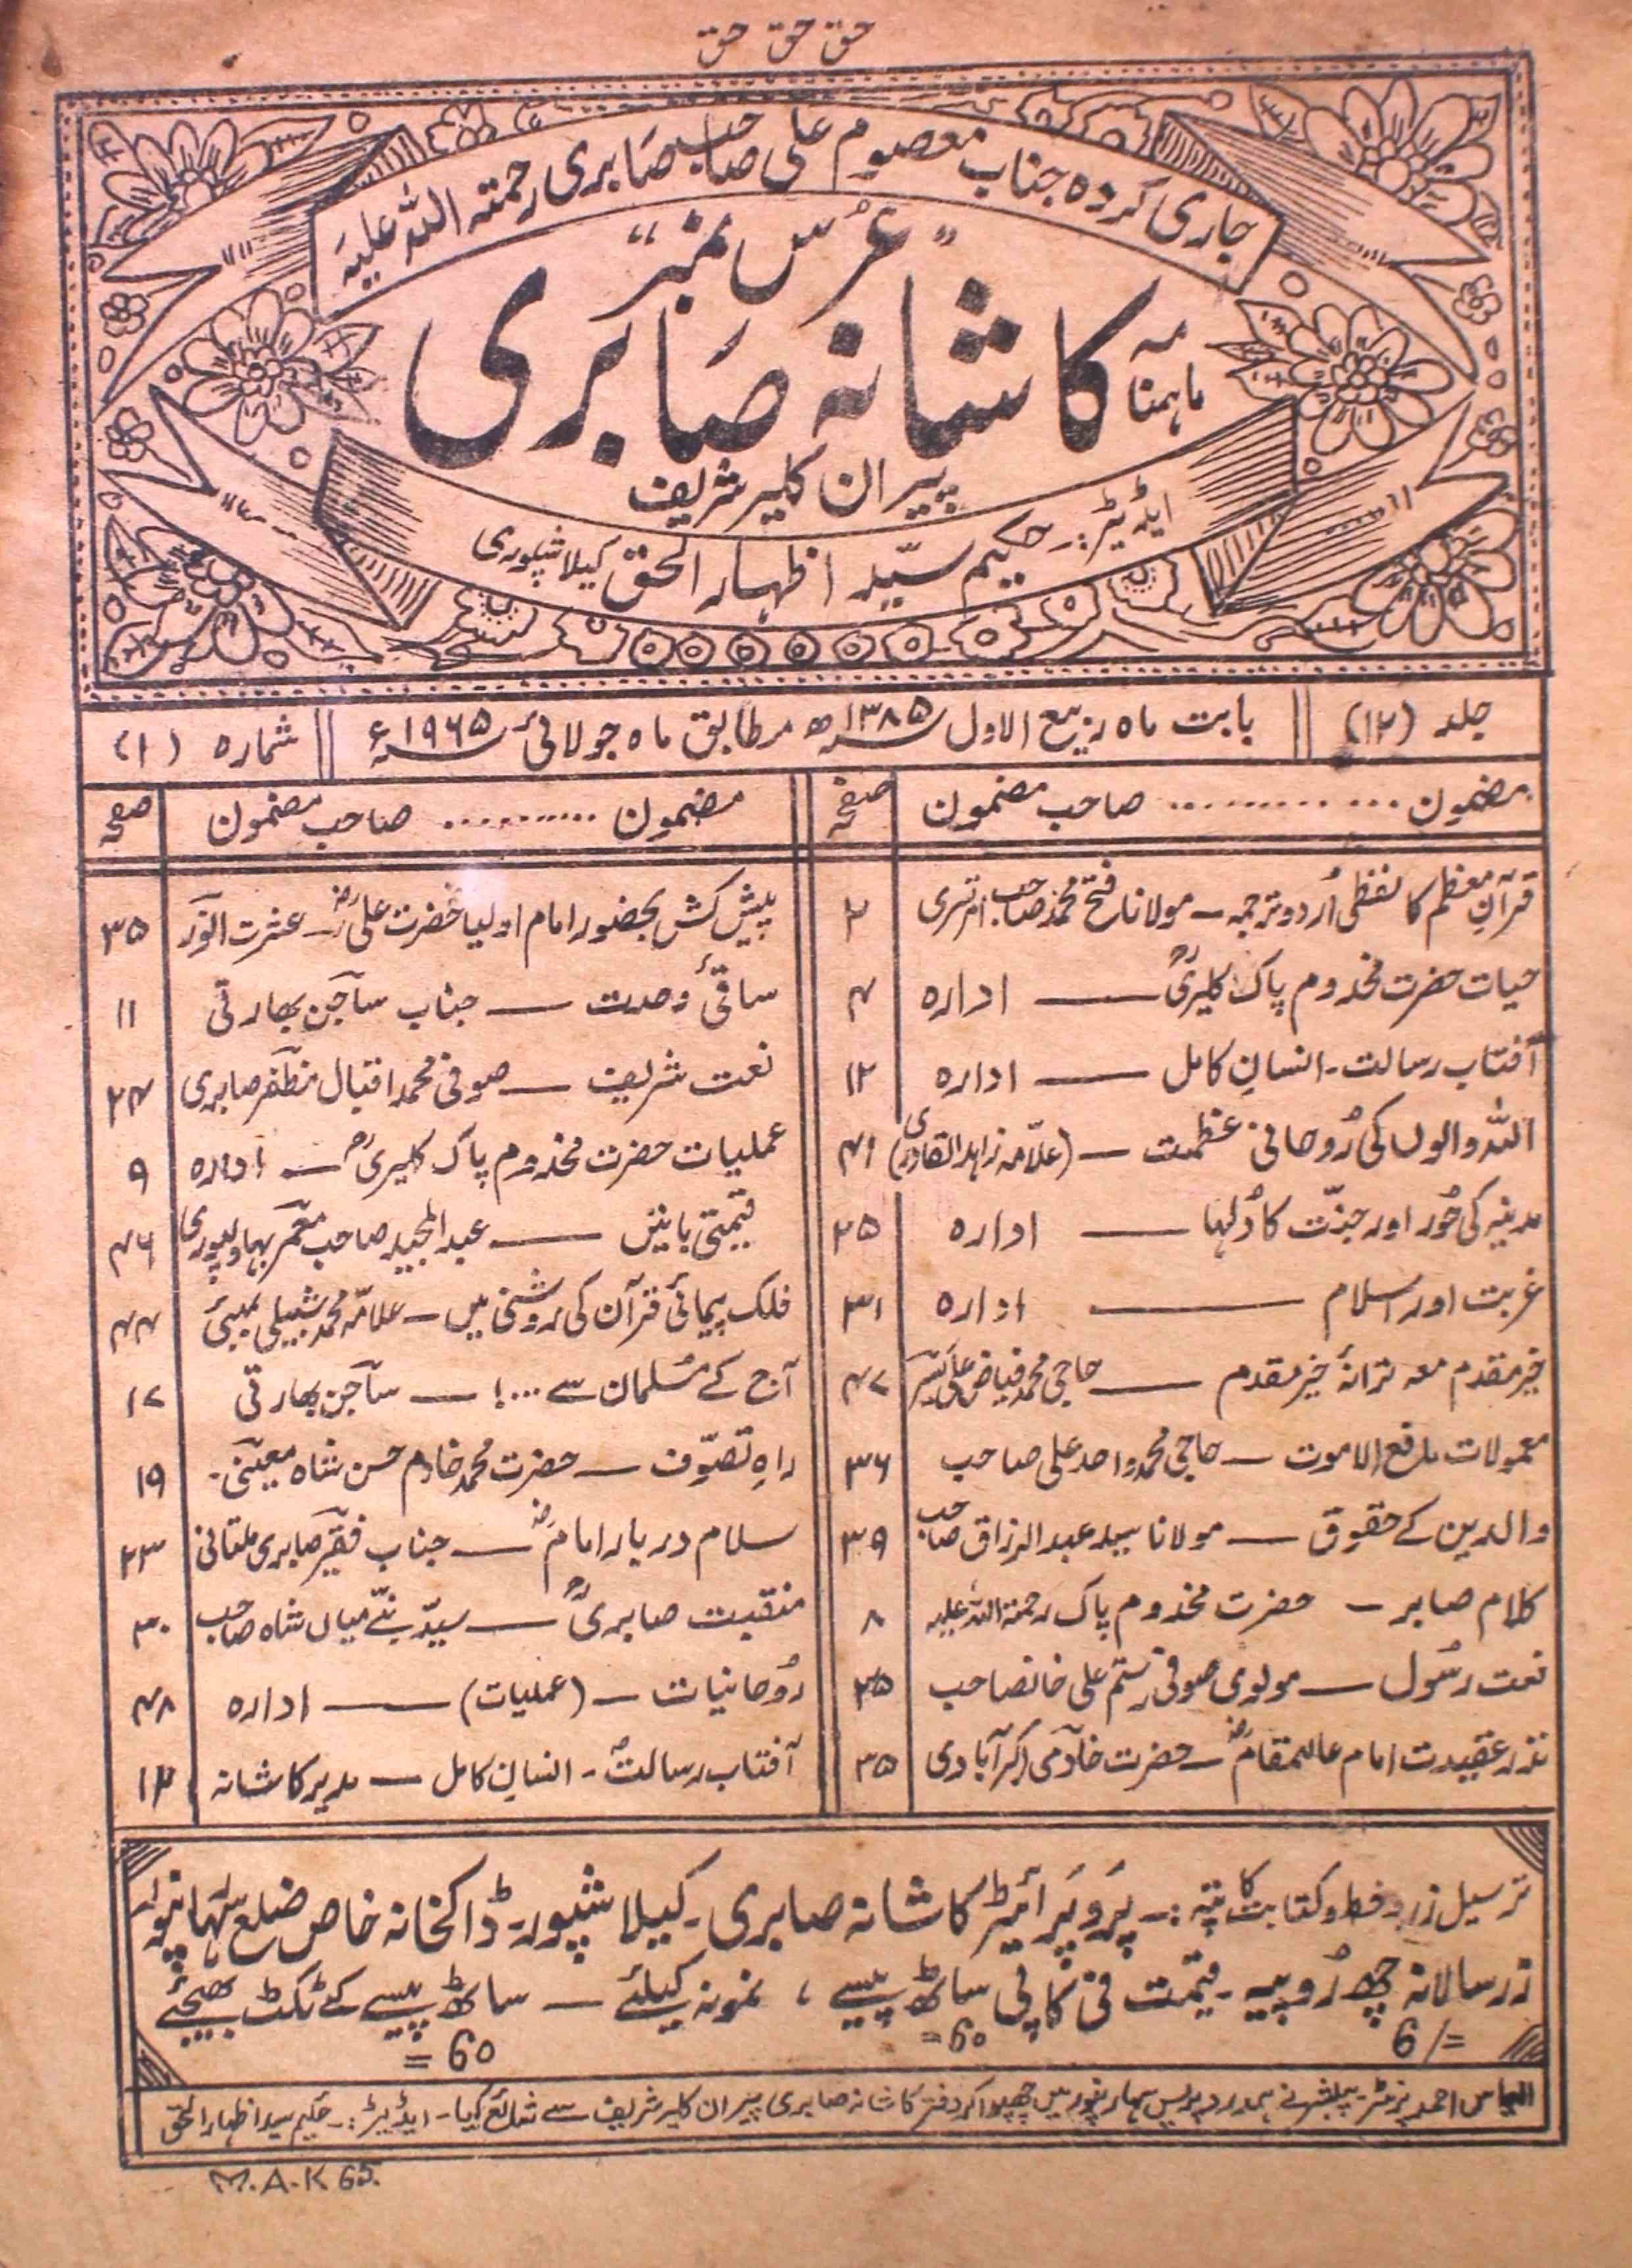 Kashana Saberi Jild 12 No 1 July 1965-SVK